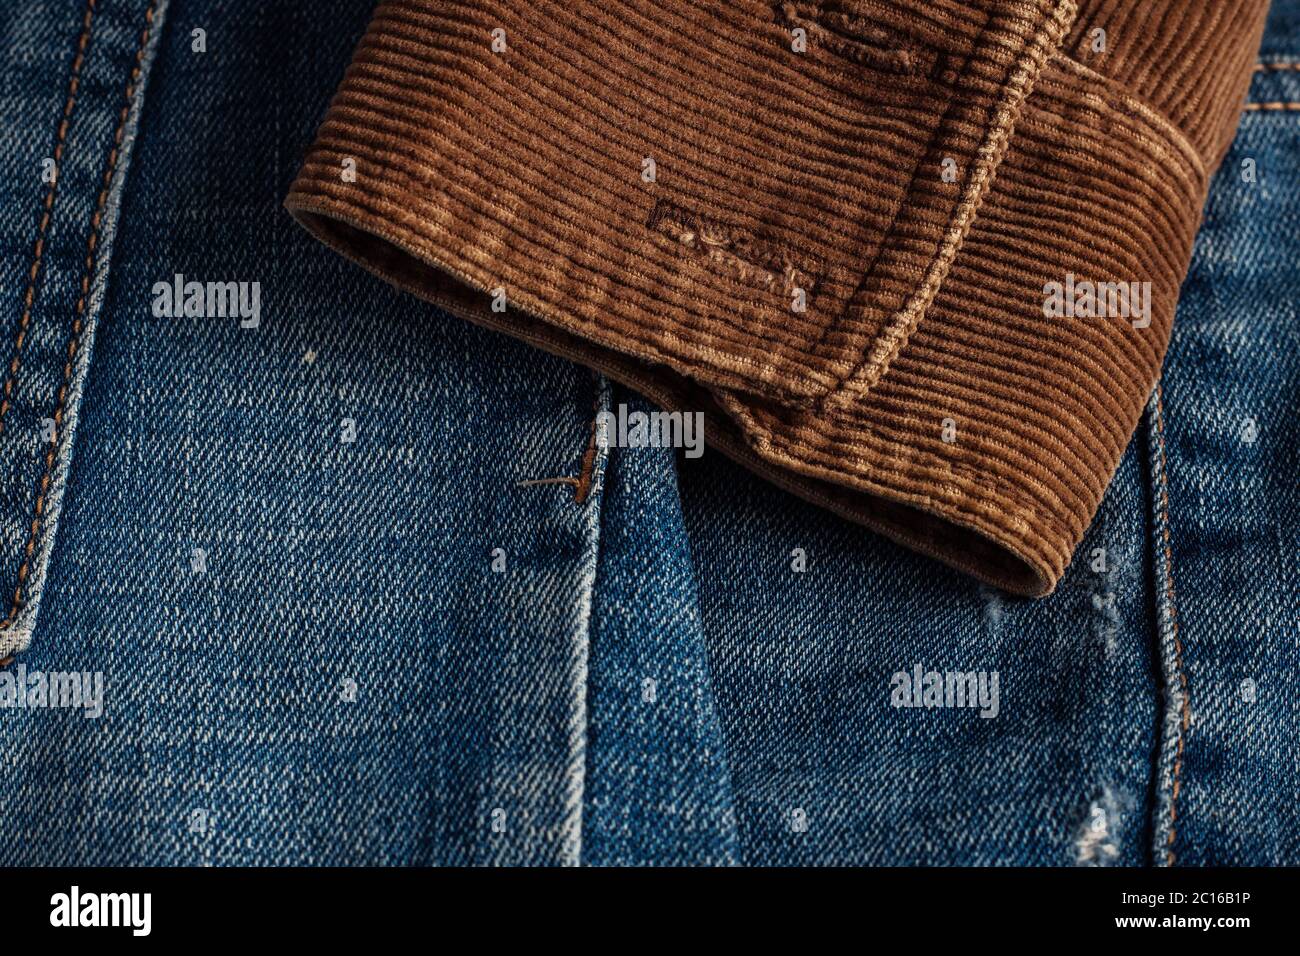 manches en velours côtelé sur un jean. Banque D'Images